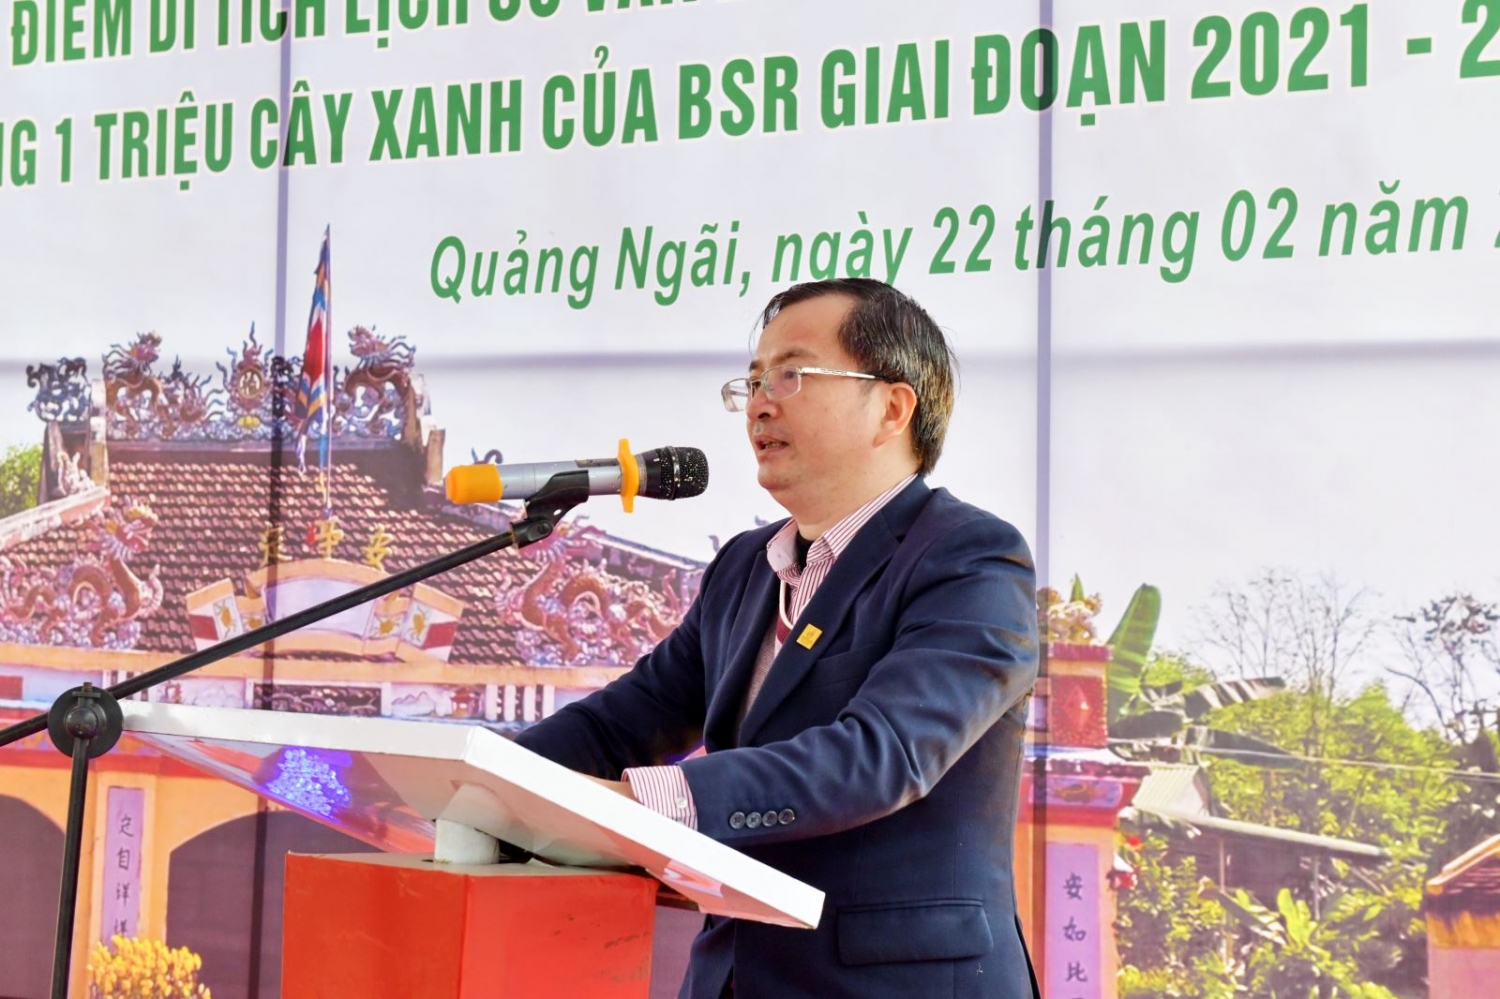 BSR ra quân trồng cây tại các điểm di tích lịch sử văn hóa tỉnh Quảng Ngãi